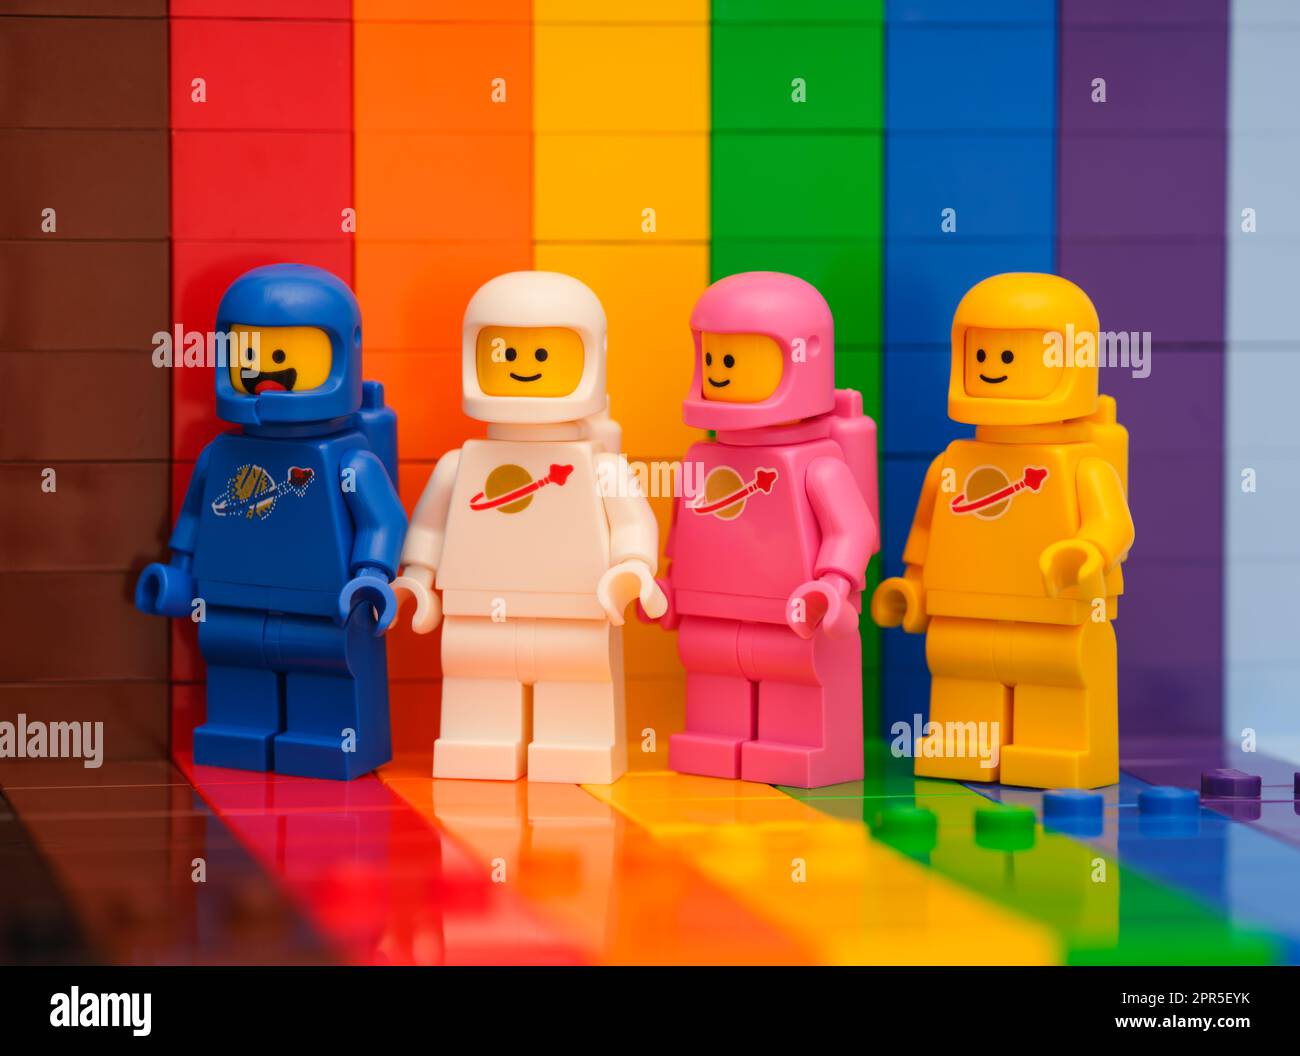 Tambov, Russische Föderation - 07. November 2022 vier Lego-Astronauten-Minifiguren, die auf einer Regenbogenkulisse stehen. Stockfoto